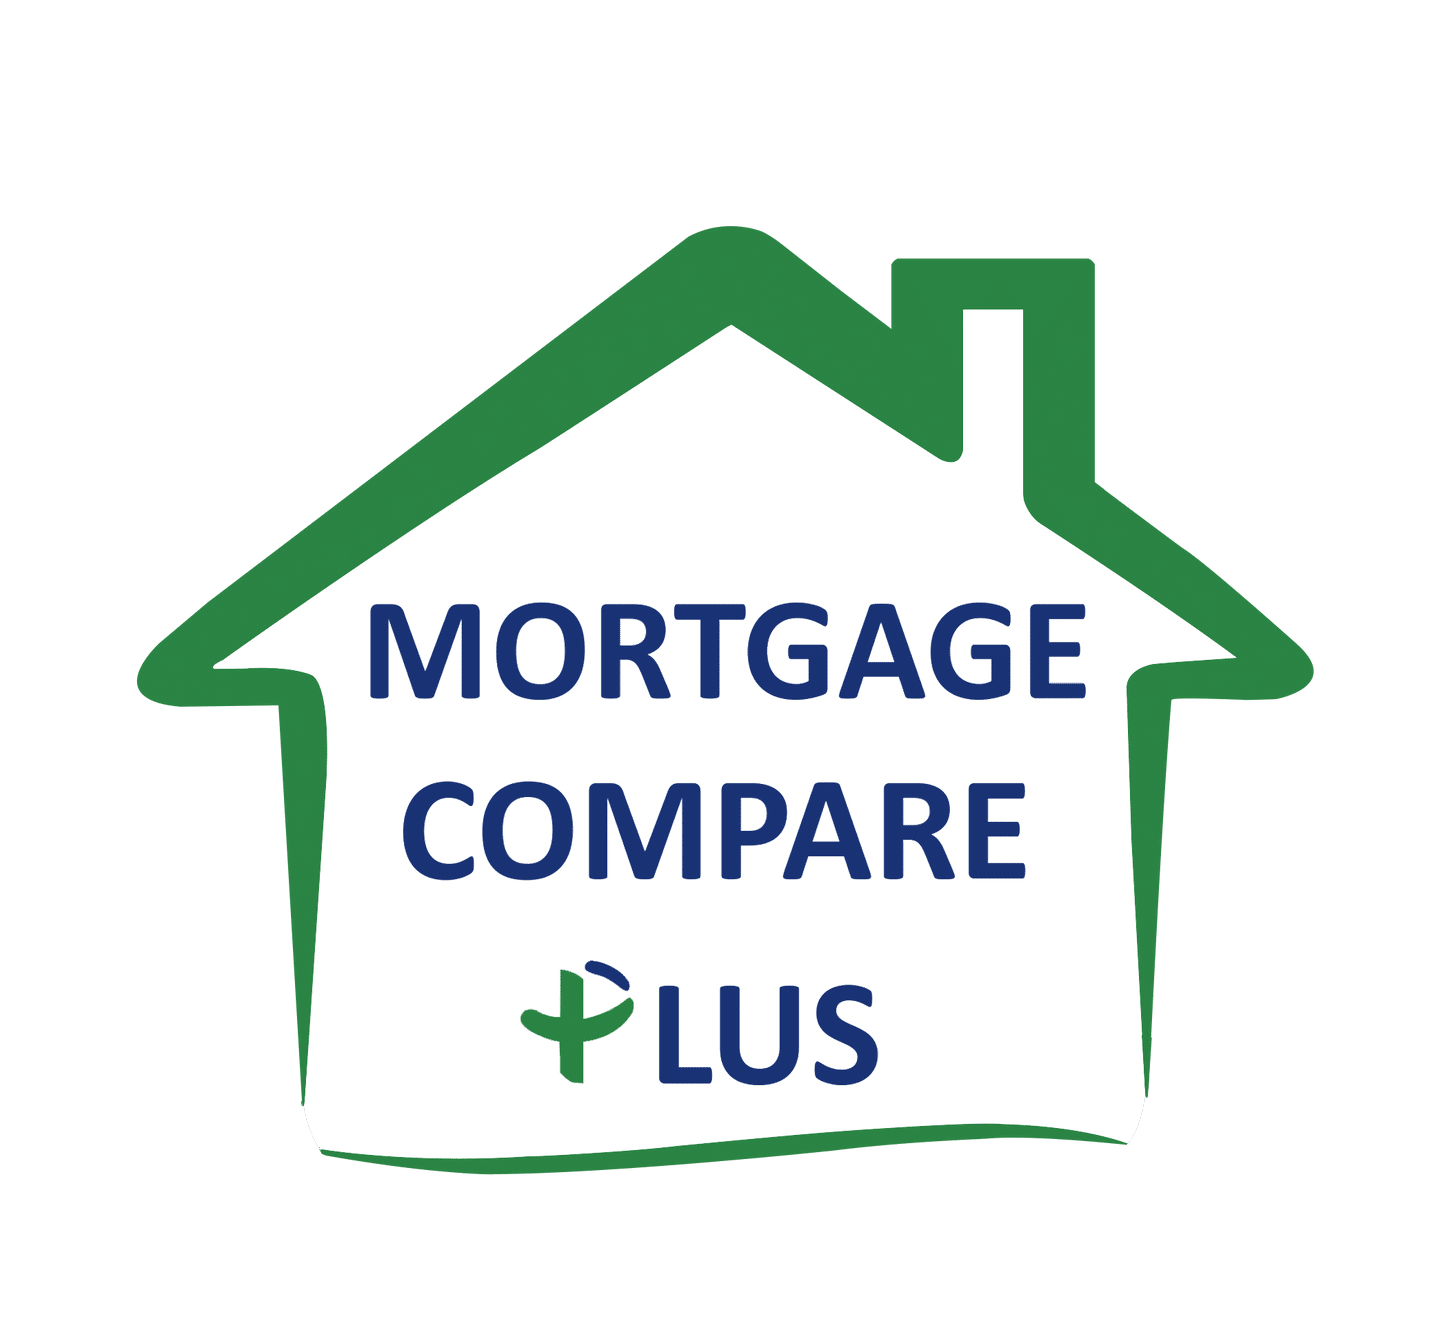 Mortgage Compare Plus